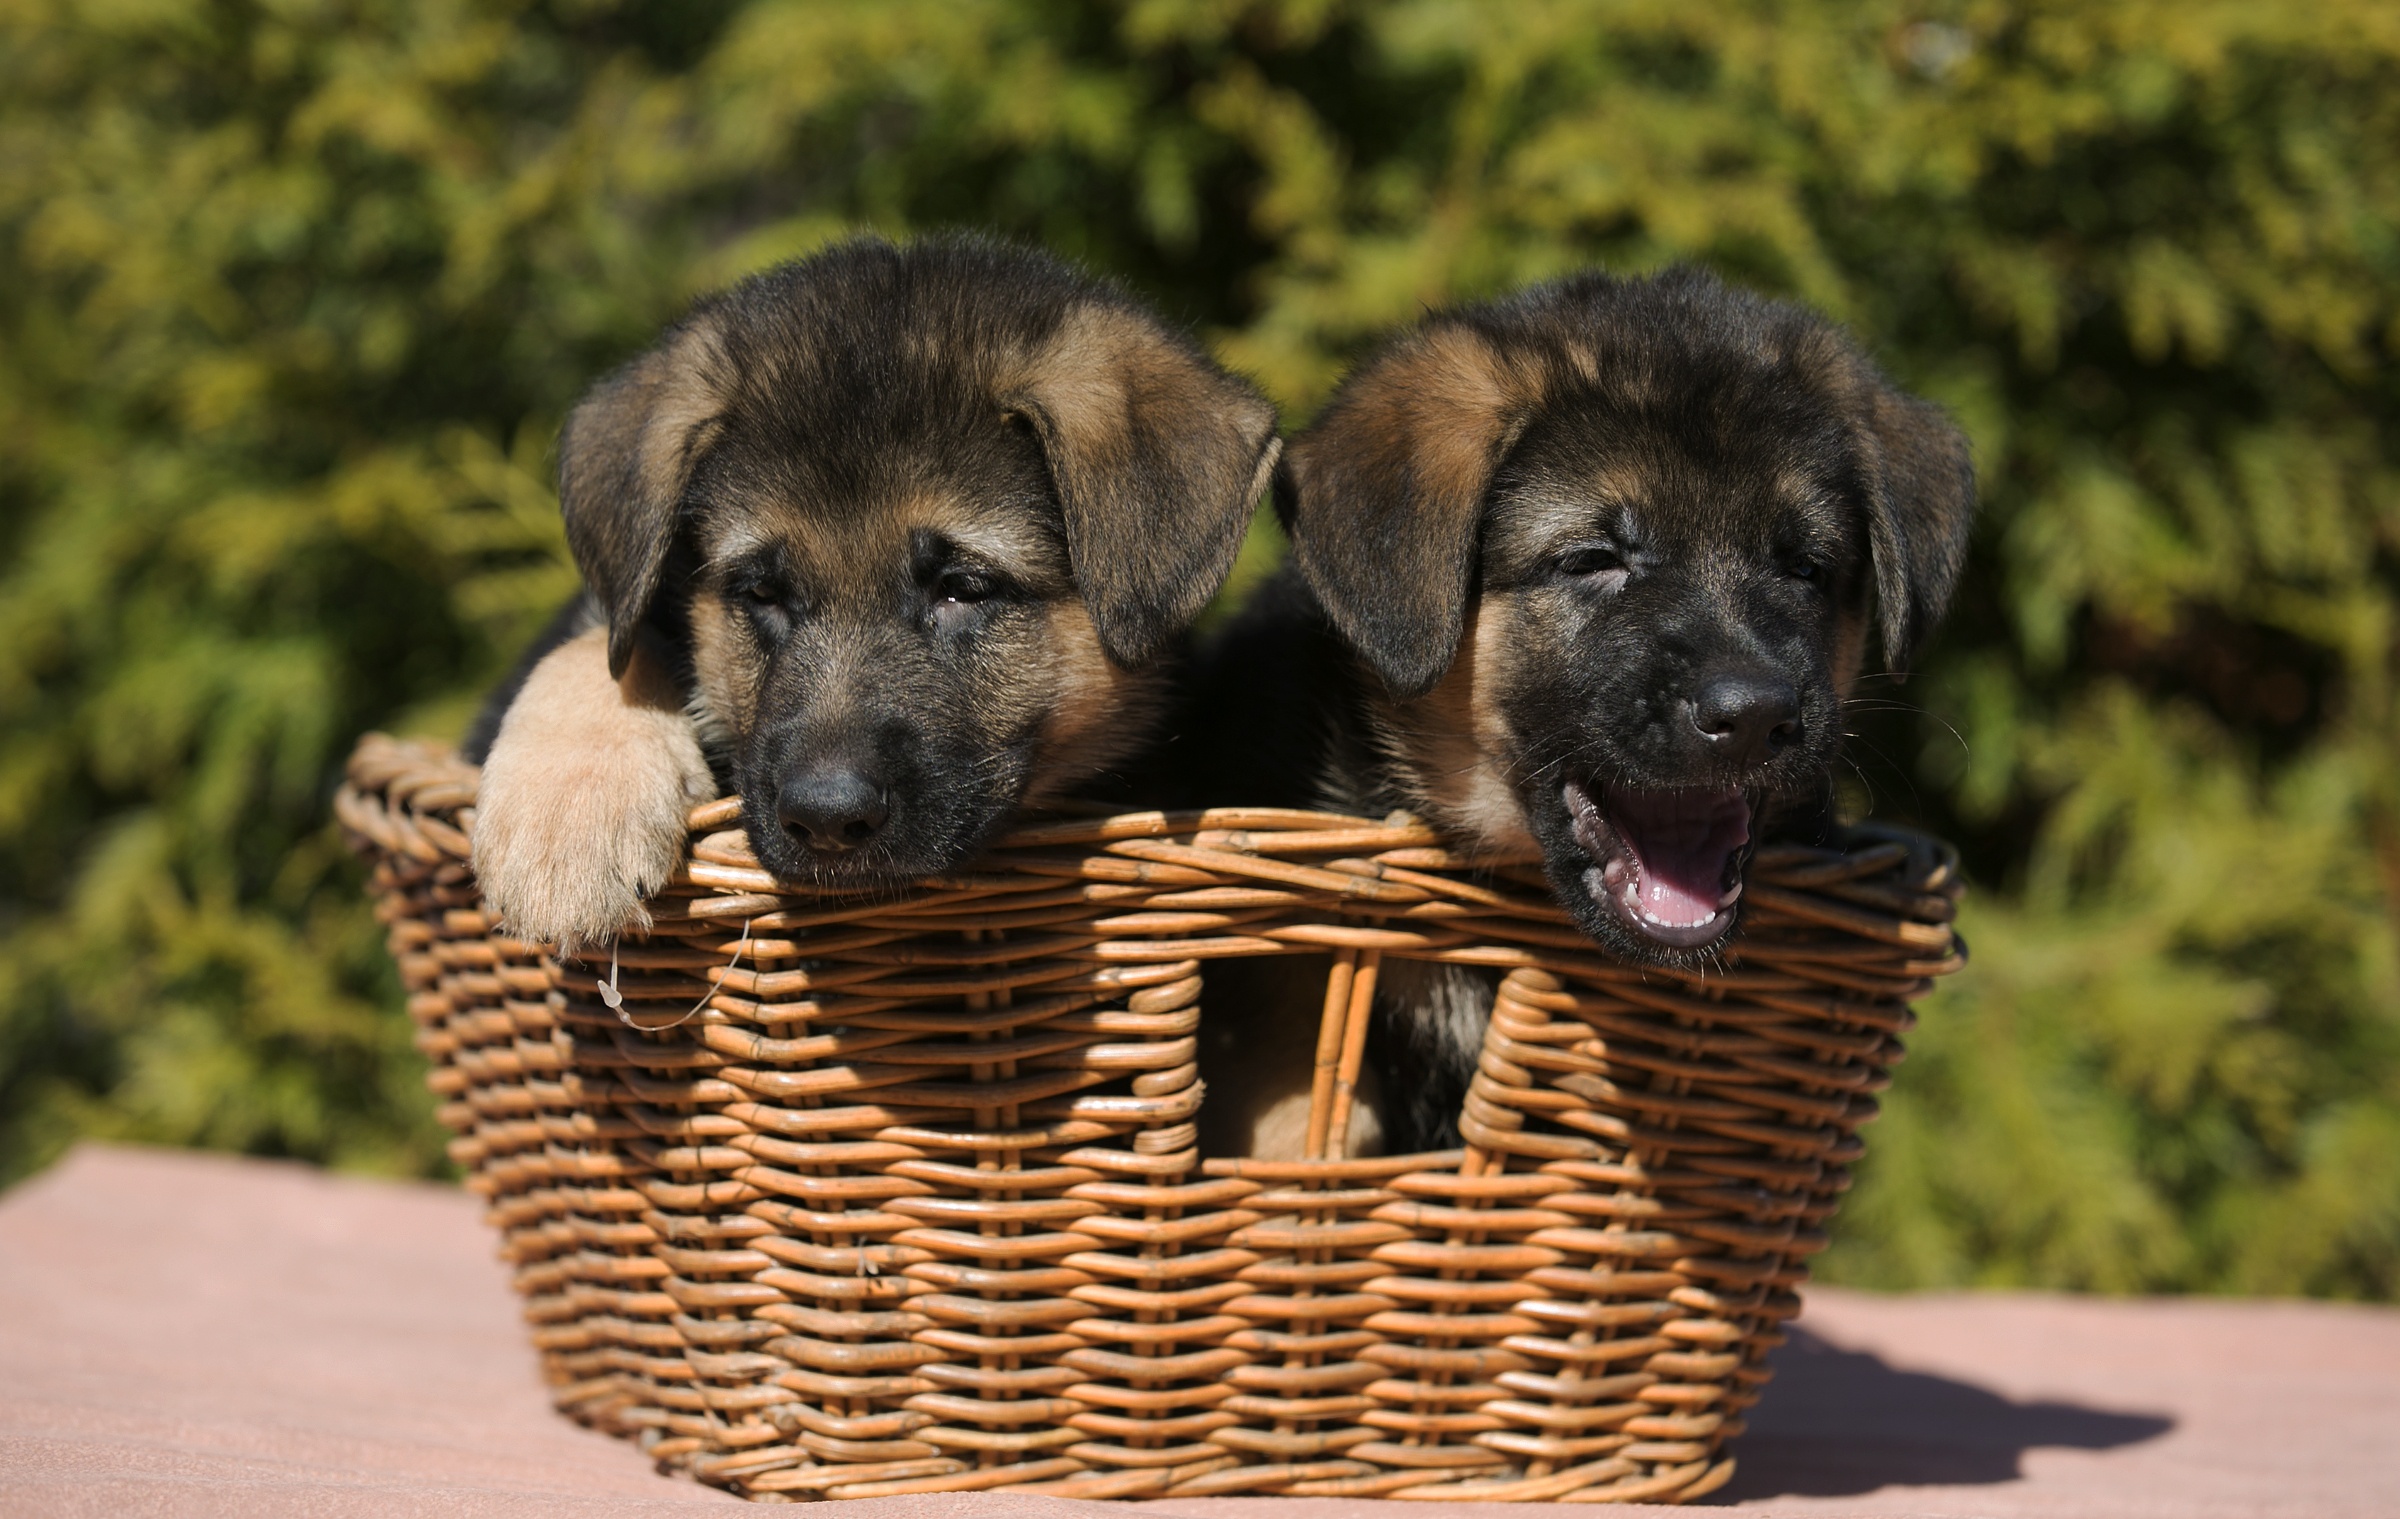 Download mobile wallpaper Dogs, Dog, Animal, Puppy, Basket, German Shepherd, Baby Animal for free.